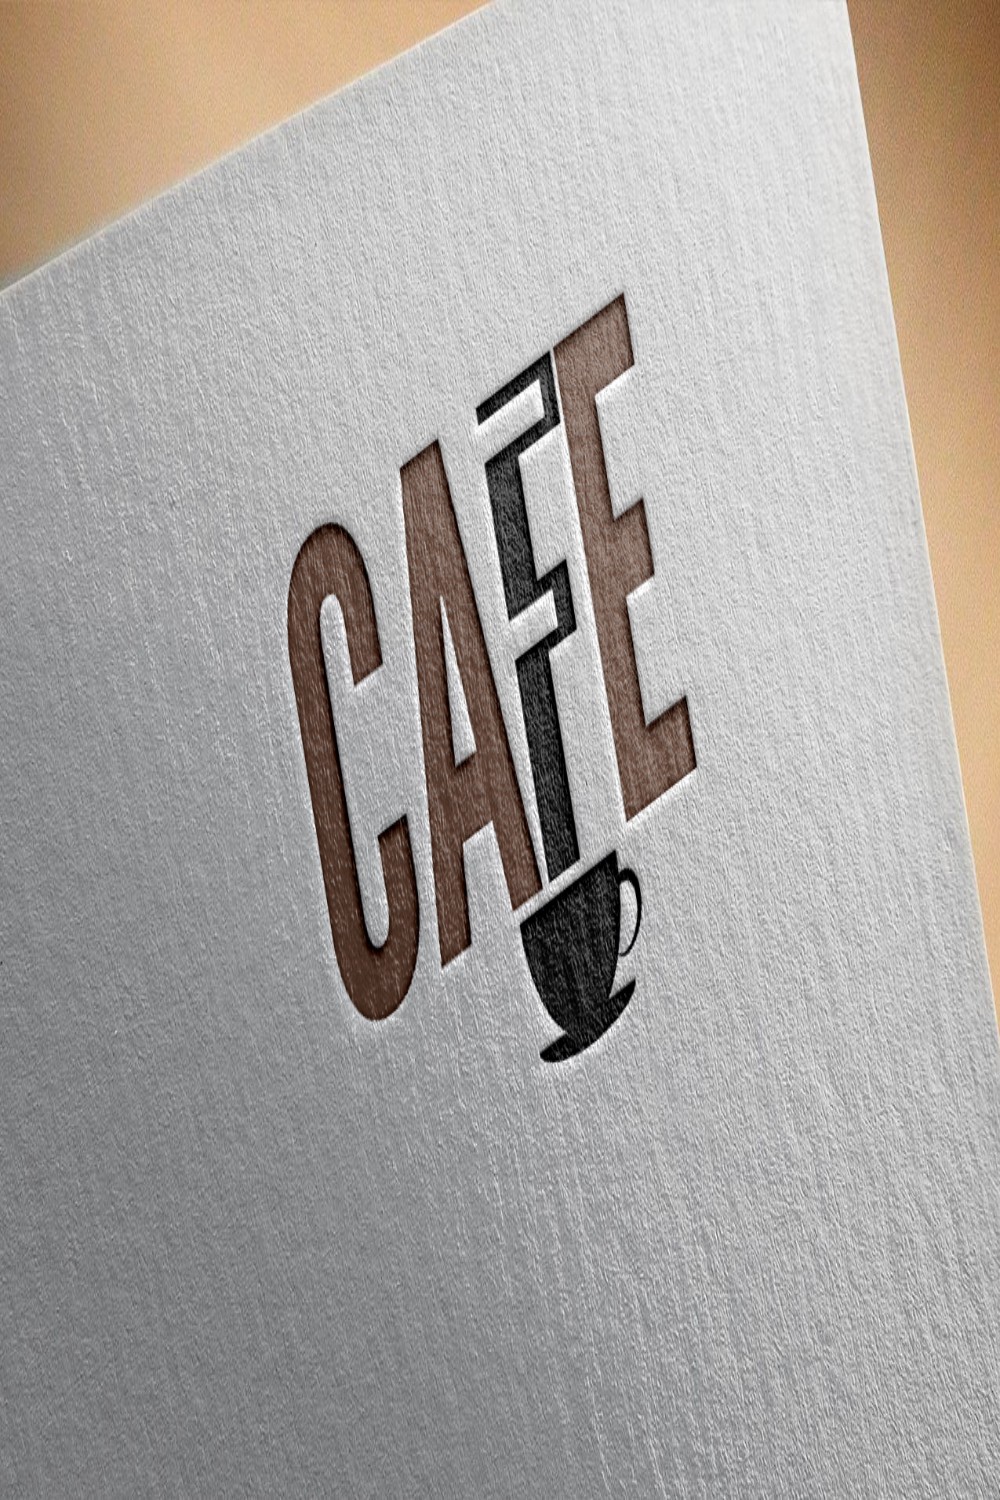 Cafe Logo Design Pinterest image.